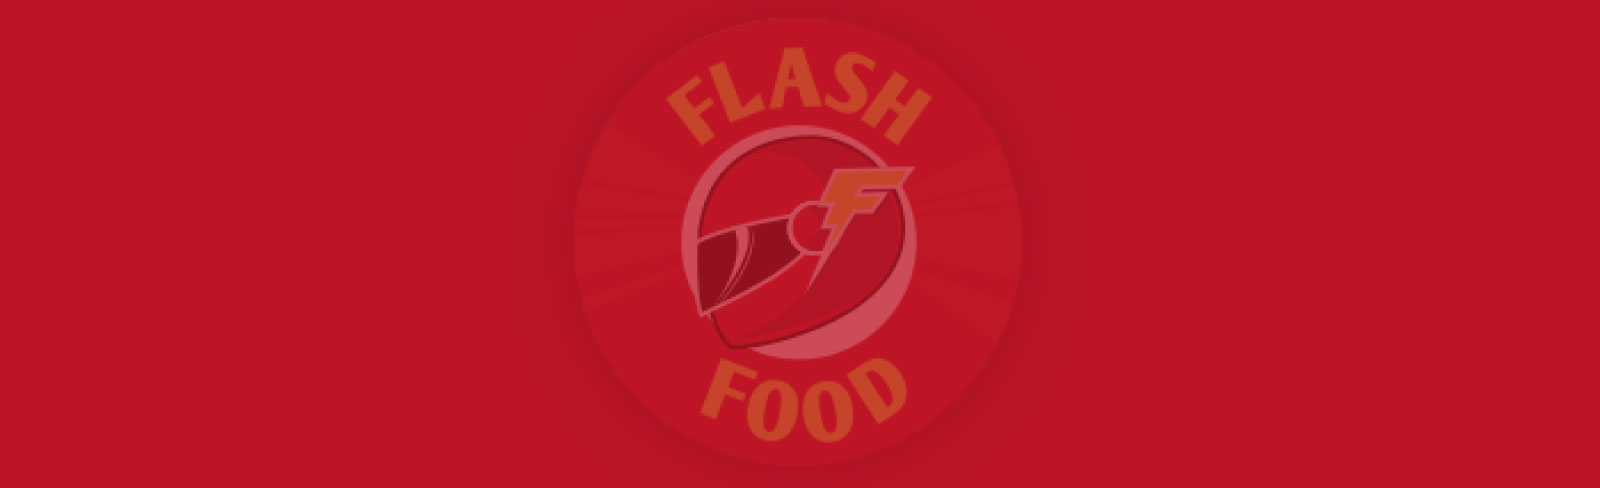 Fondo de Flashfood, uno de los proyectos destacados de App&Web